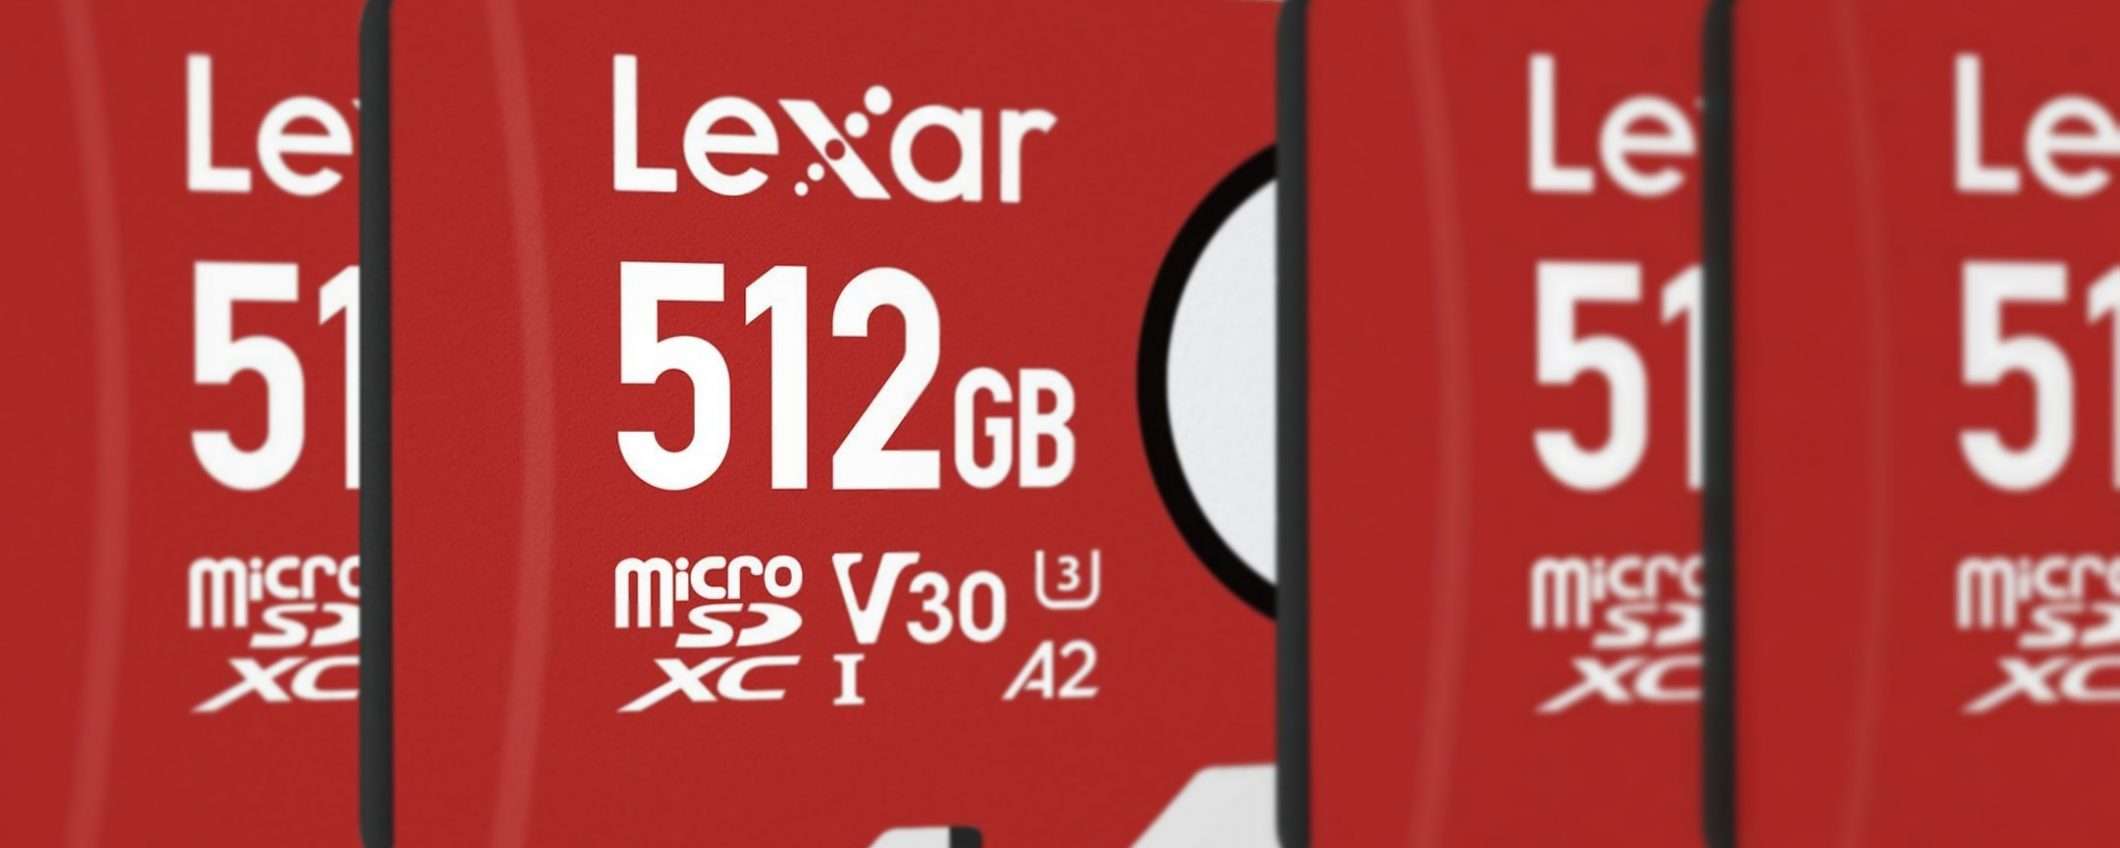 microSD Lexar: capacità, performance e sconti